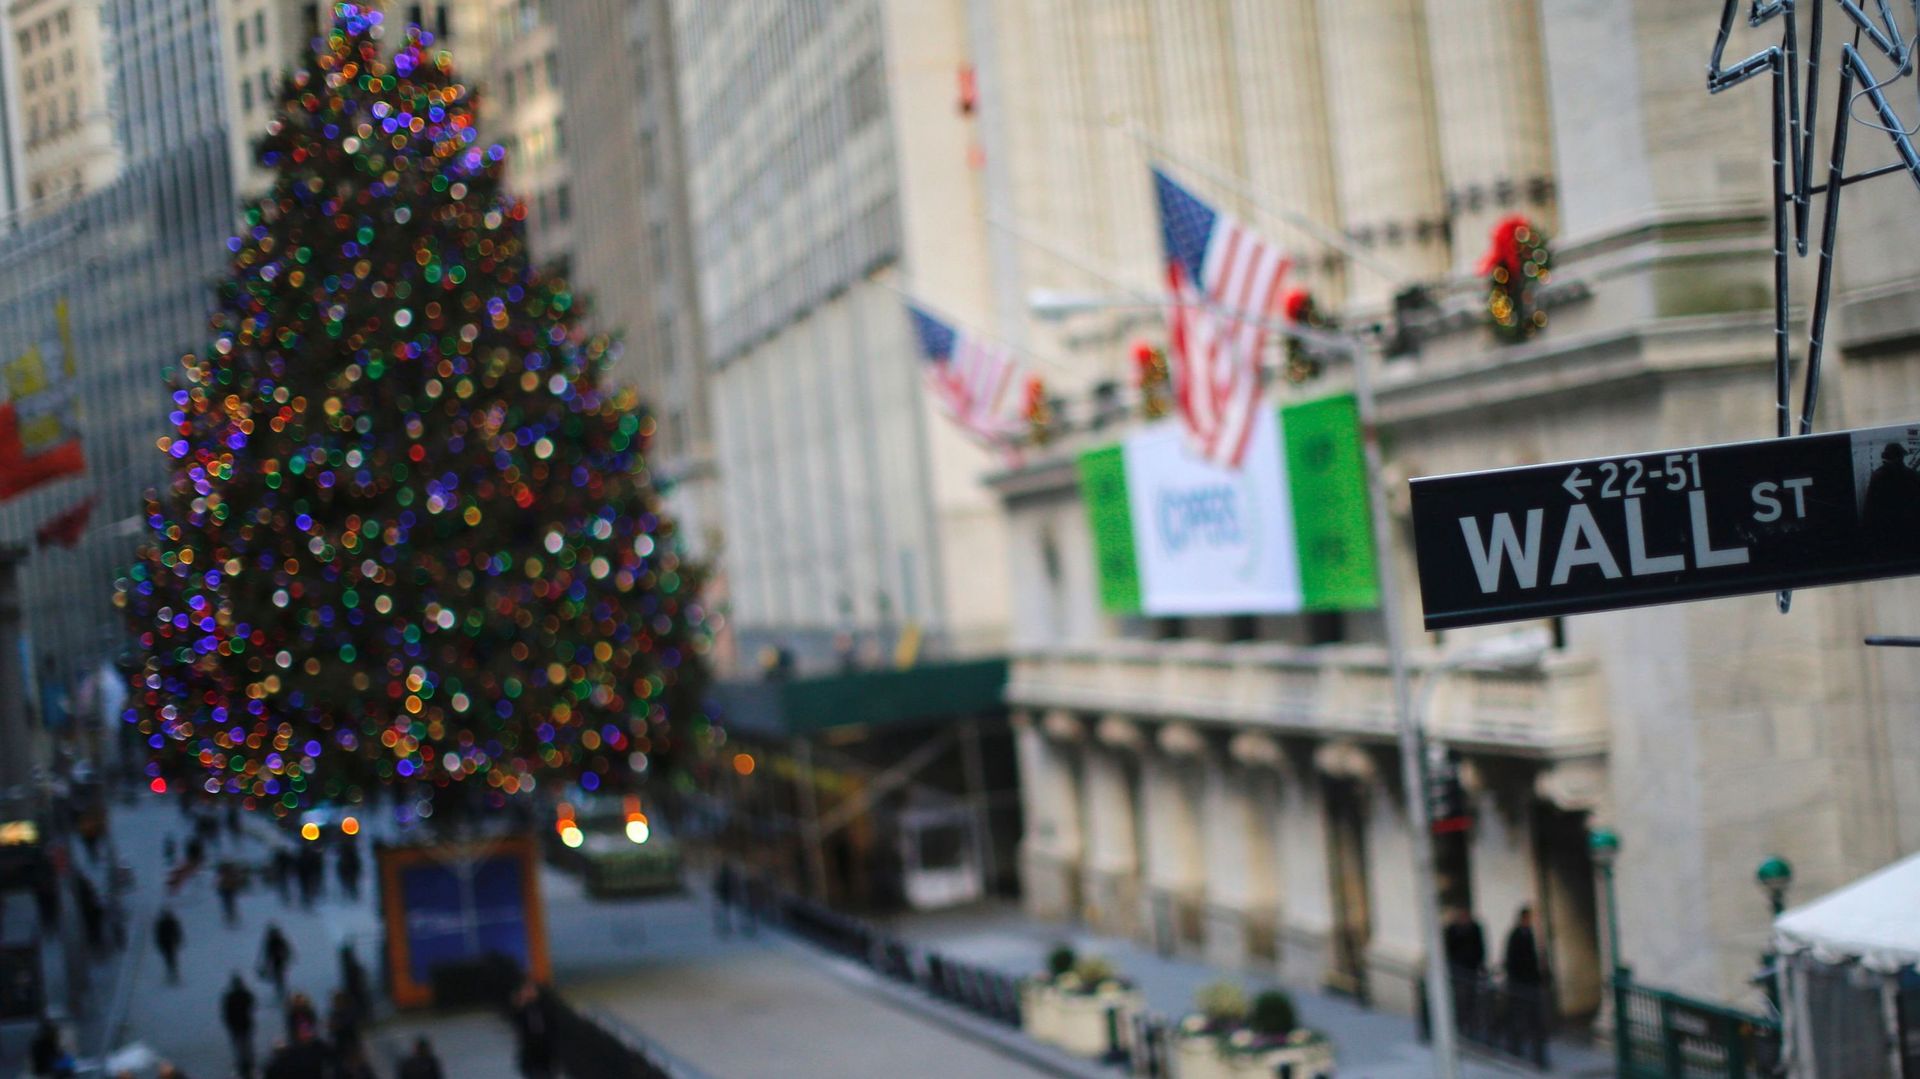 l'indice vedette Dow Jones a affiché sa plus belle performance depuis 2013 avec une hausse de 13,42% sur un an.